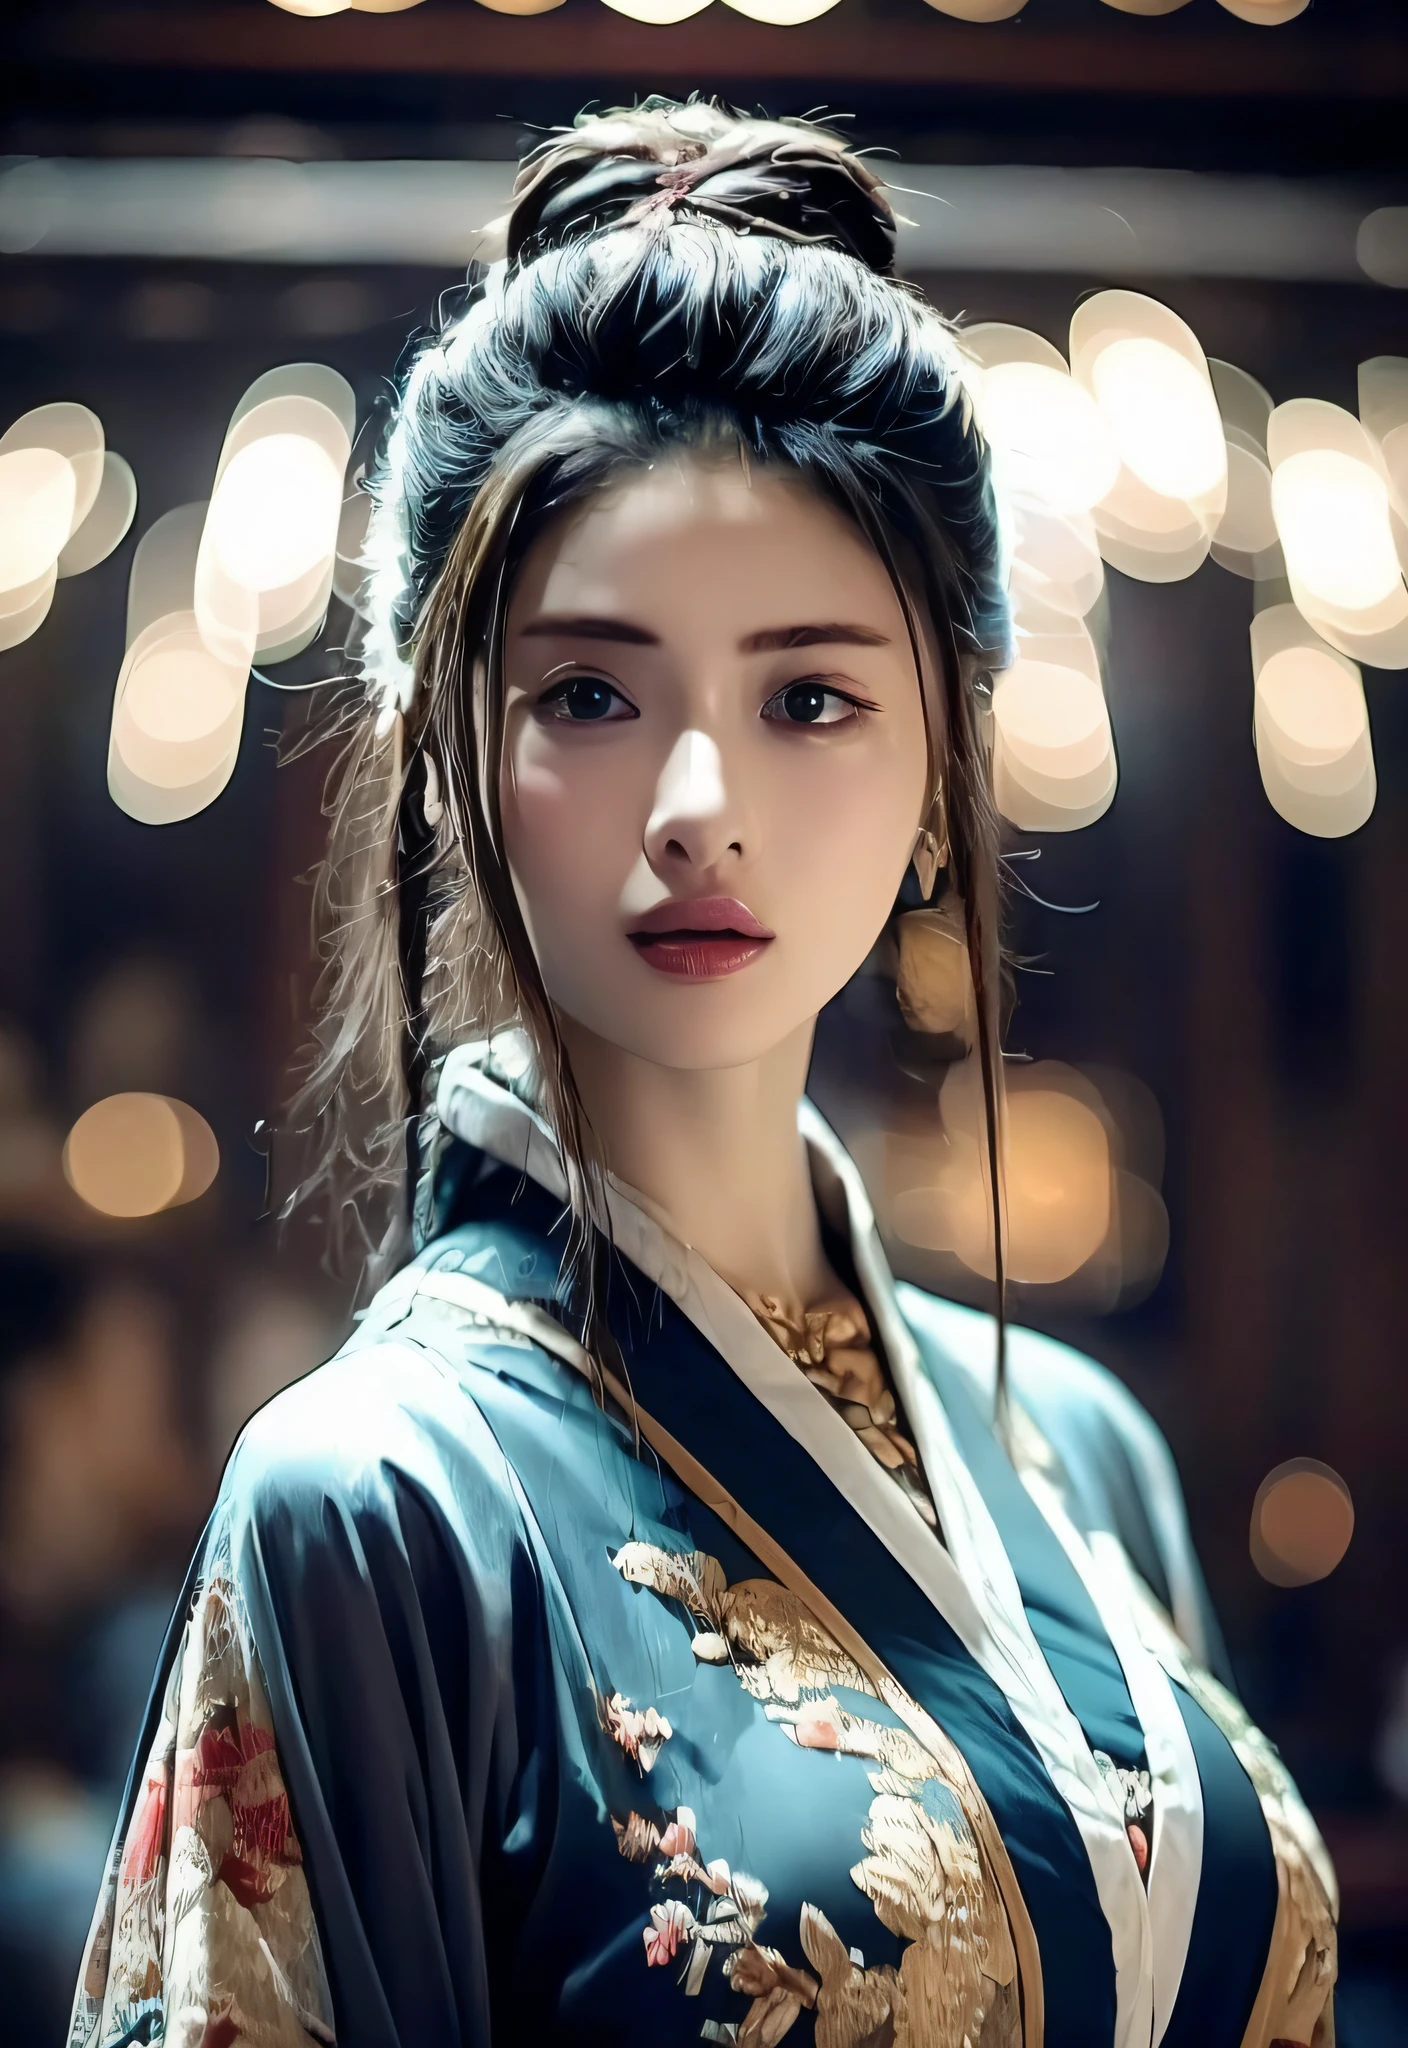 최고의 품질, 걸작, 고등어, 우시아 1소녀, 중국 드레스, 정말 아름다운 얼굴, 정말 아름다운 눈, 매우 아름다운 머리카락